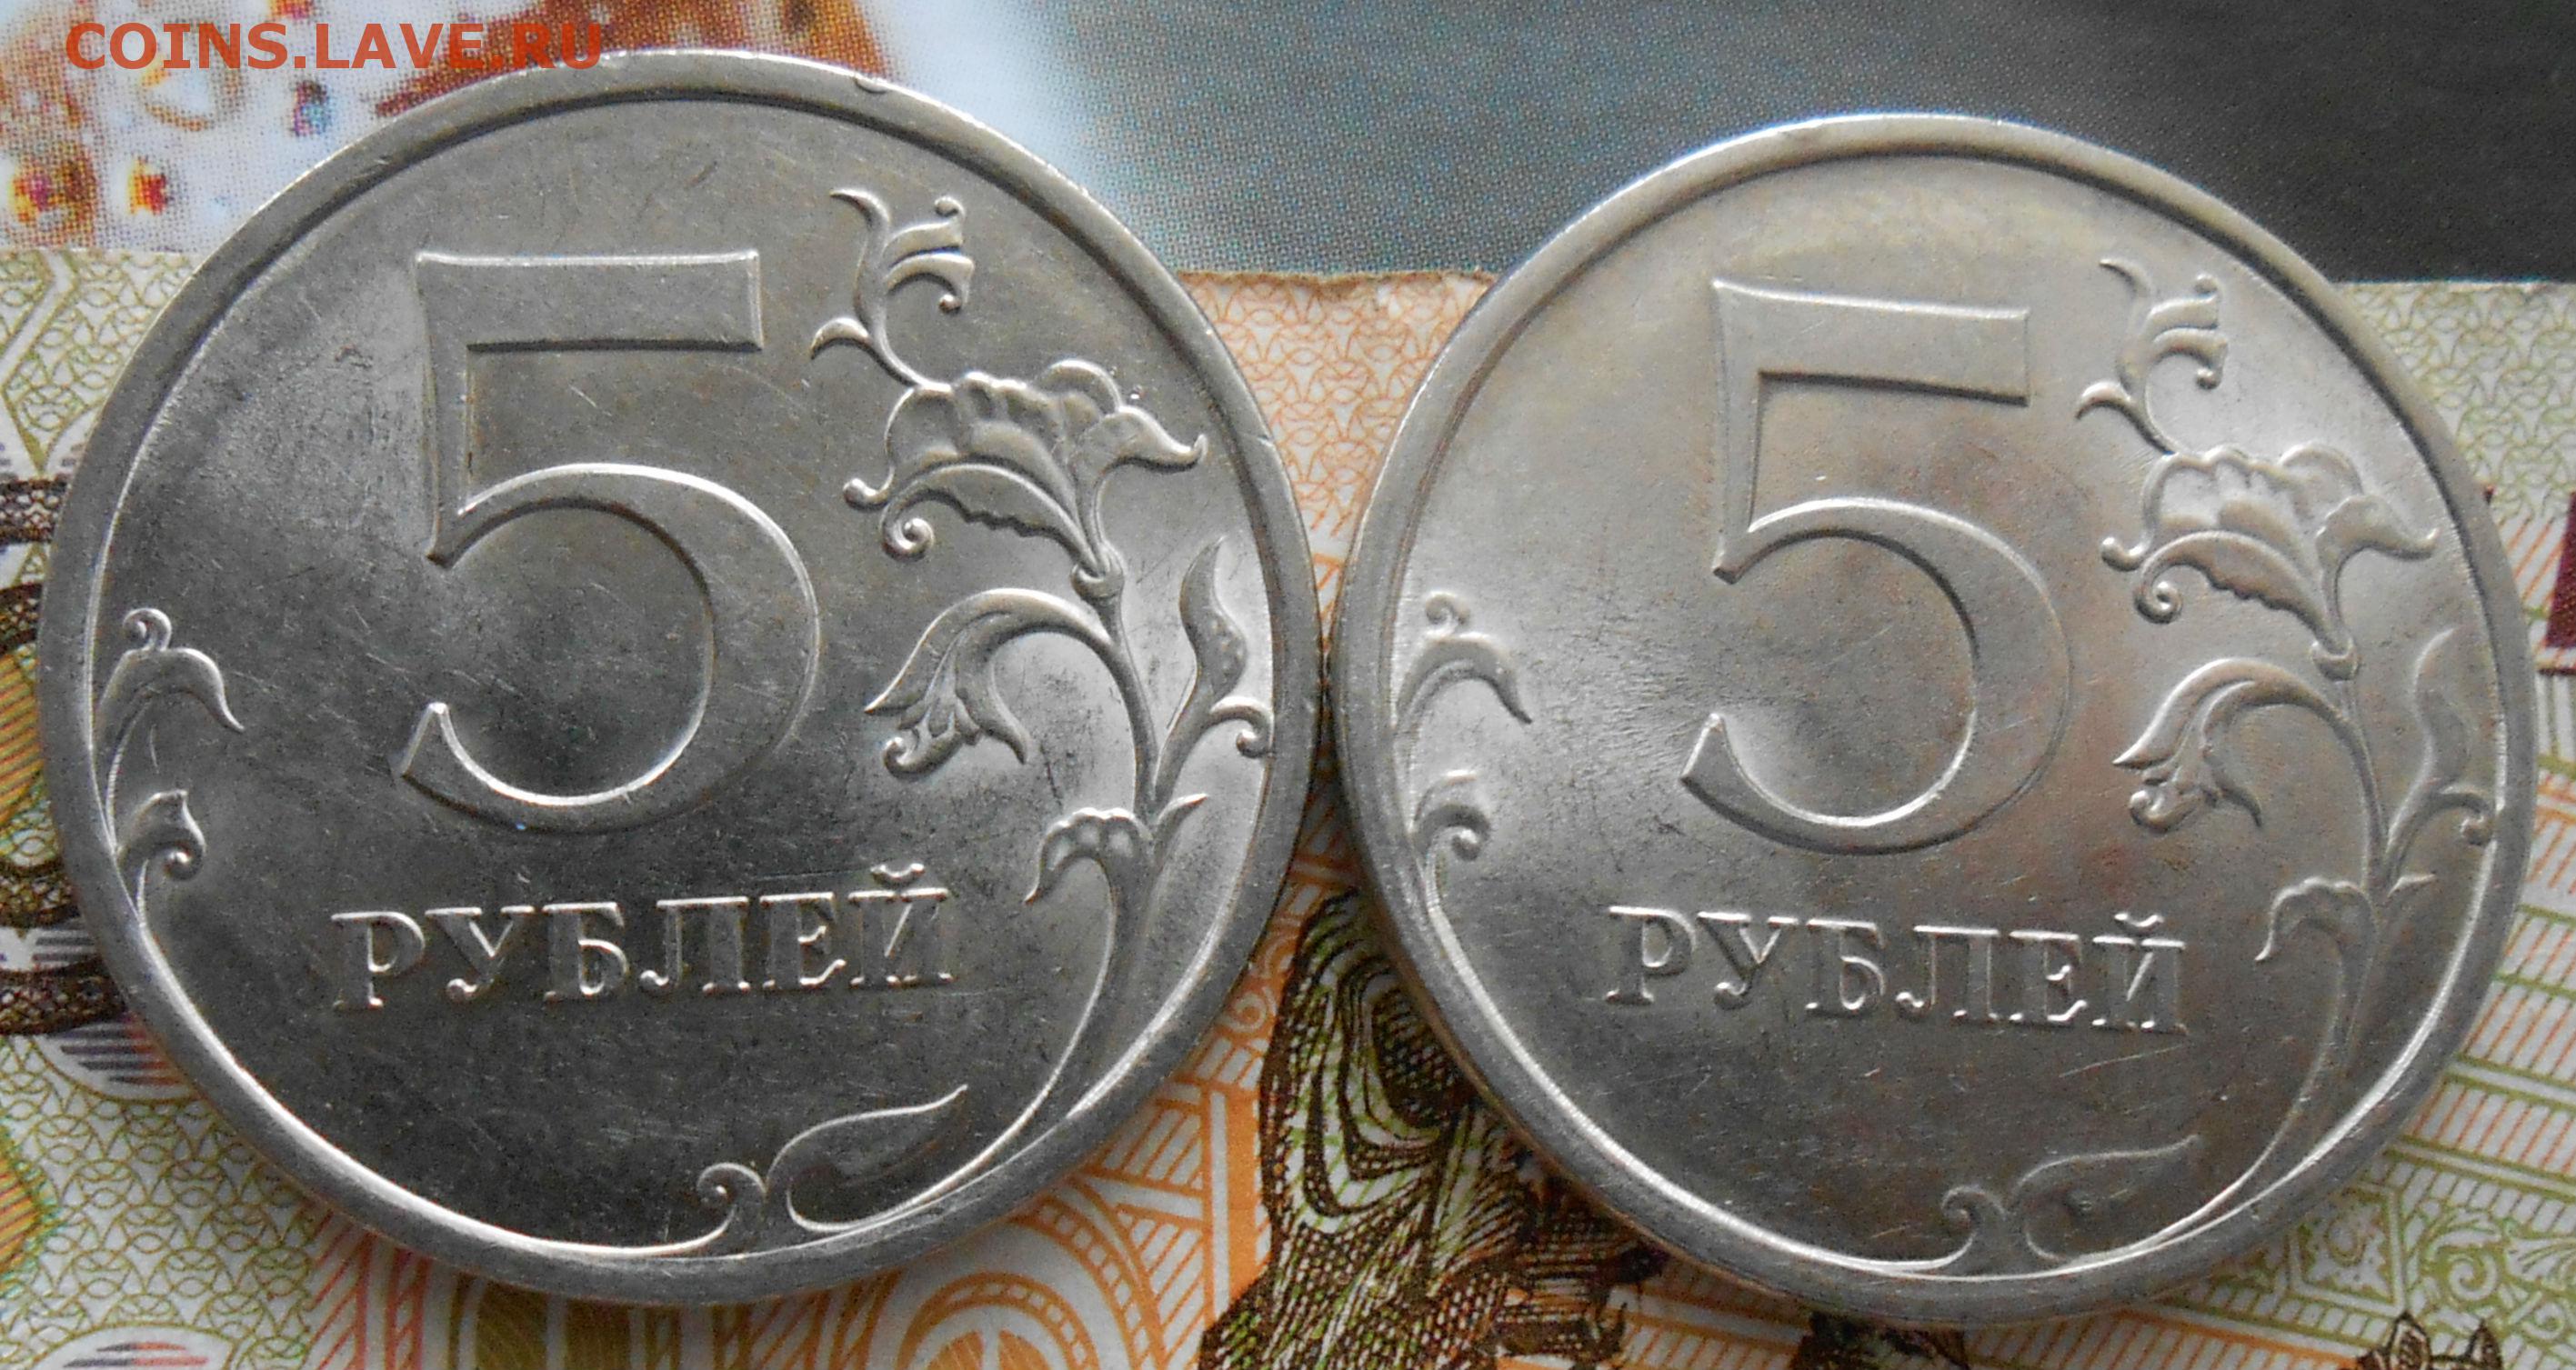 5 рублей немагнитная. Монета 2 рубля 2009 немагнитная. Монета 5 рублей 2009 без борта. 2 Рубля 2009 ММД (немагнитная). Два рубля стоимость 2009.